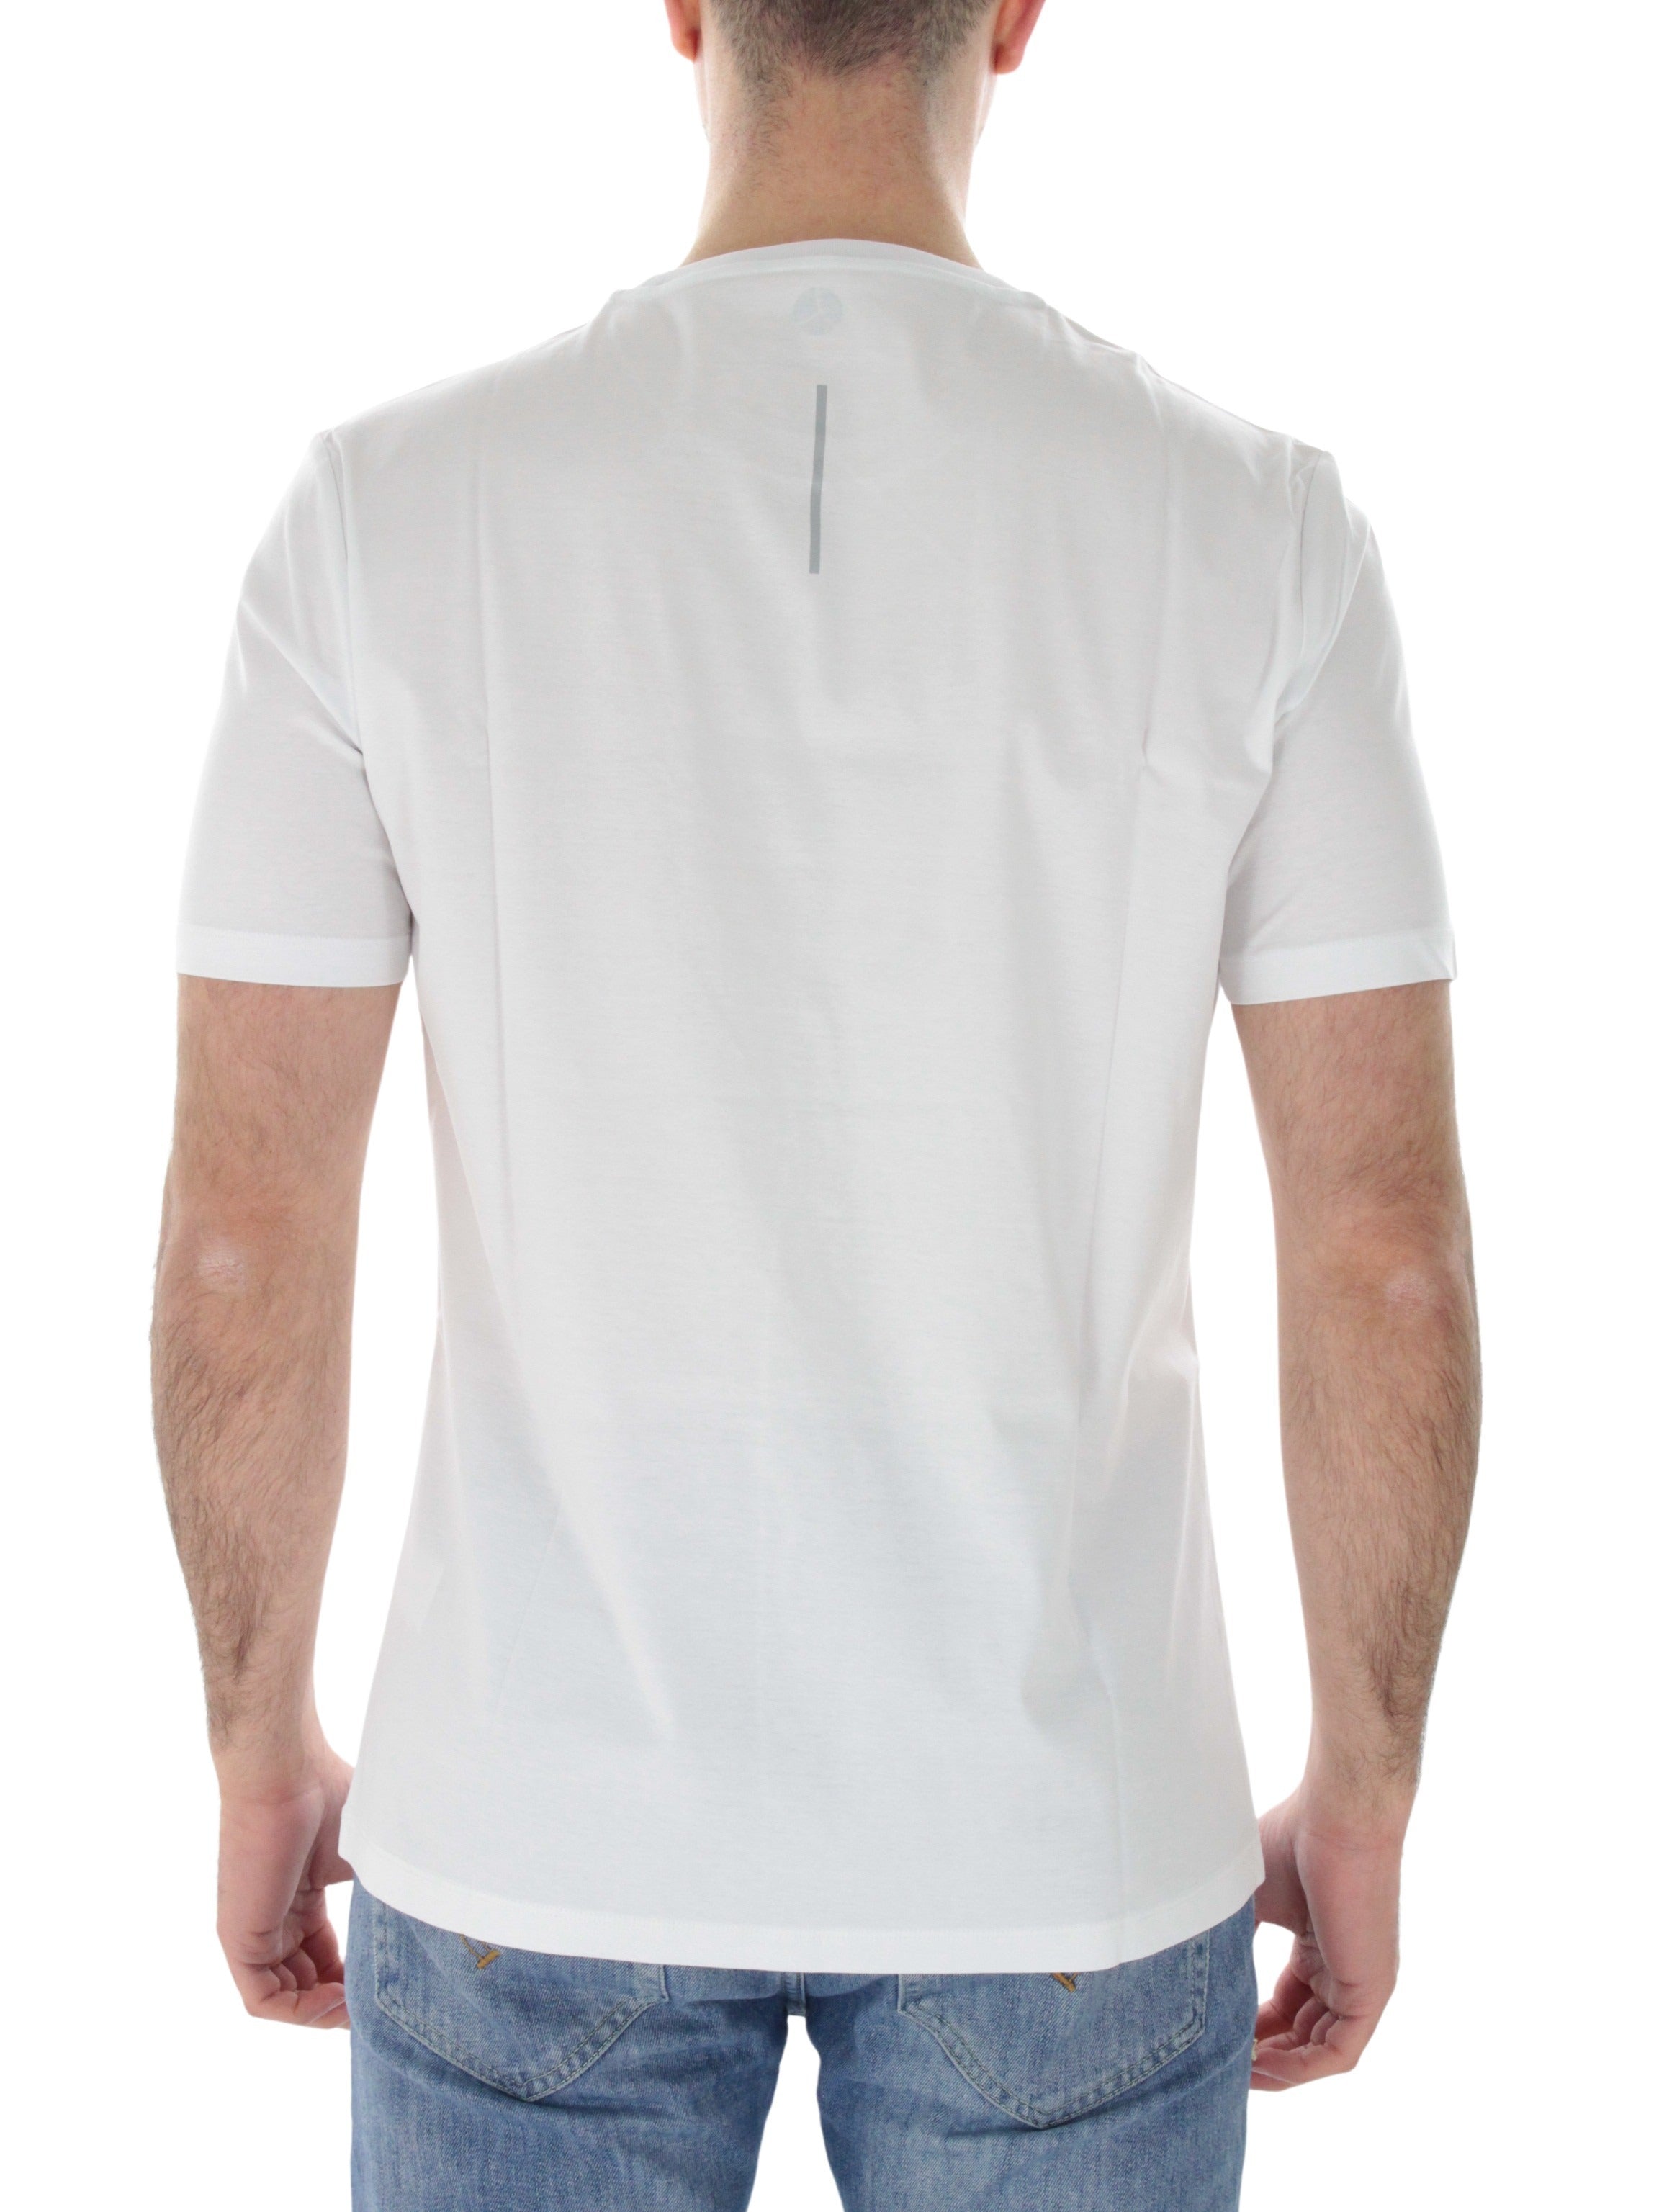 Shiko PM444 white logo t-shirt